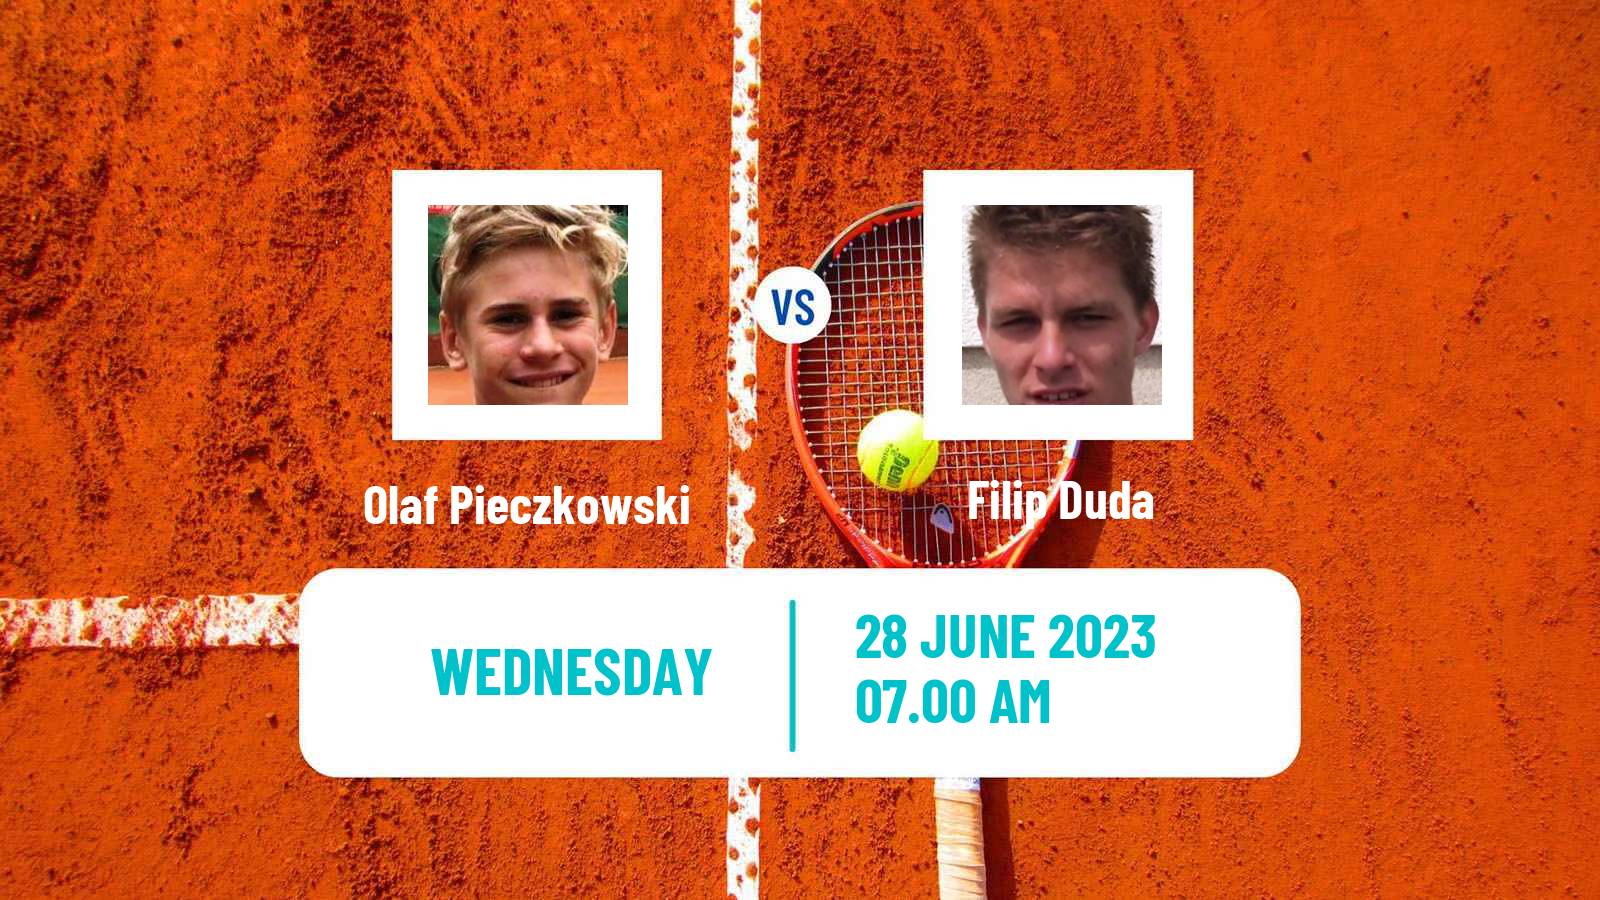 Tennis ITF M15 Wroclaw Men Olaf Pieczkowski - Filip Duda